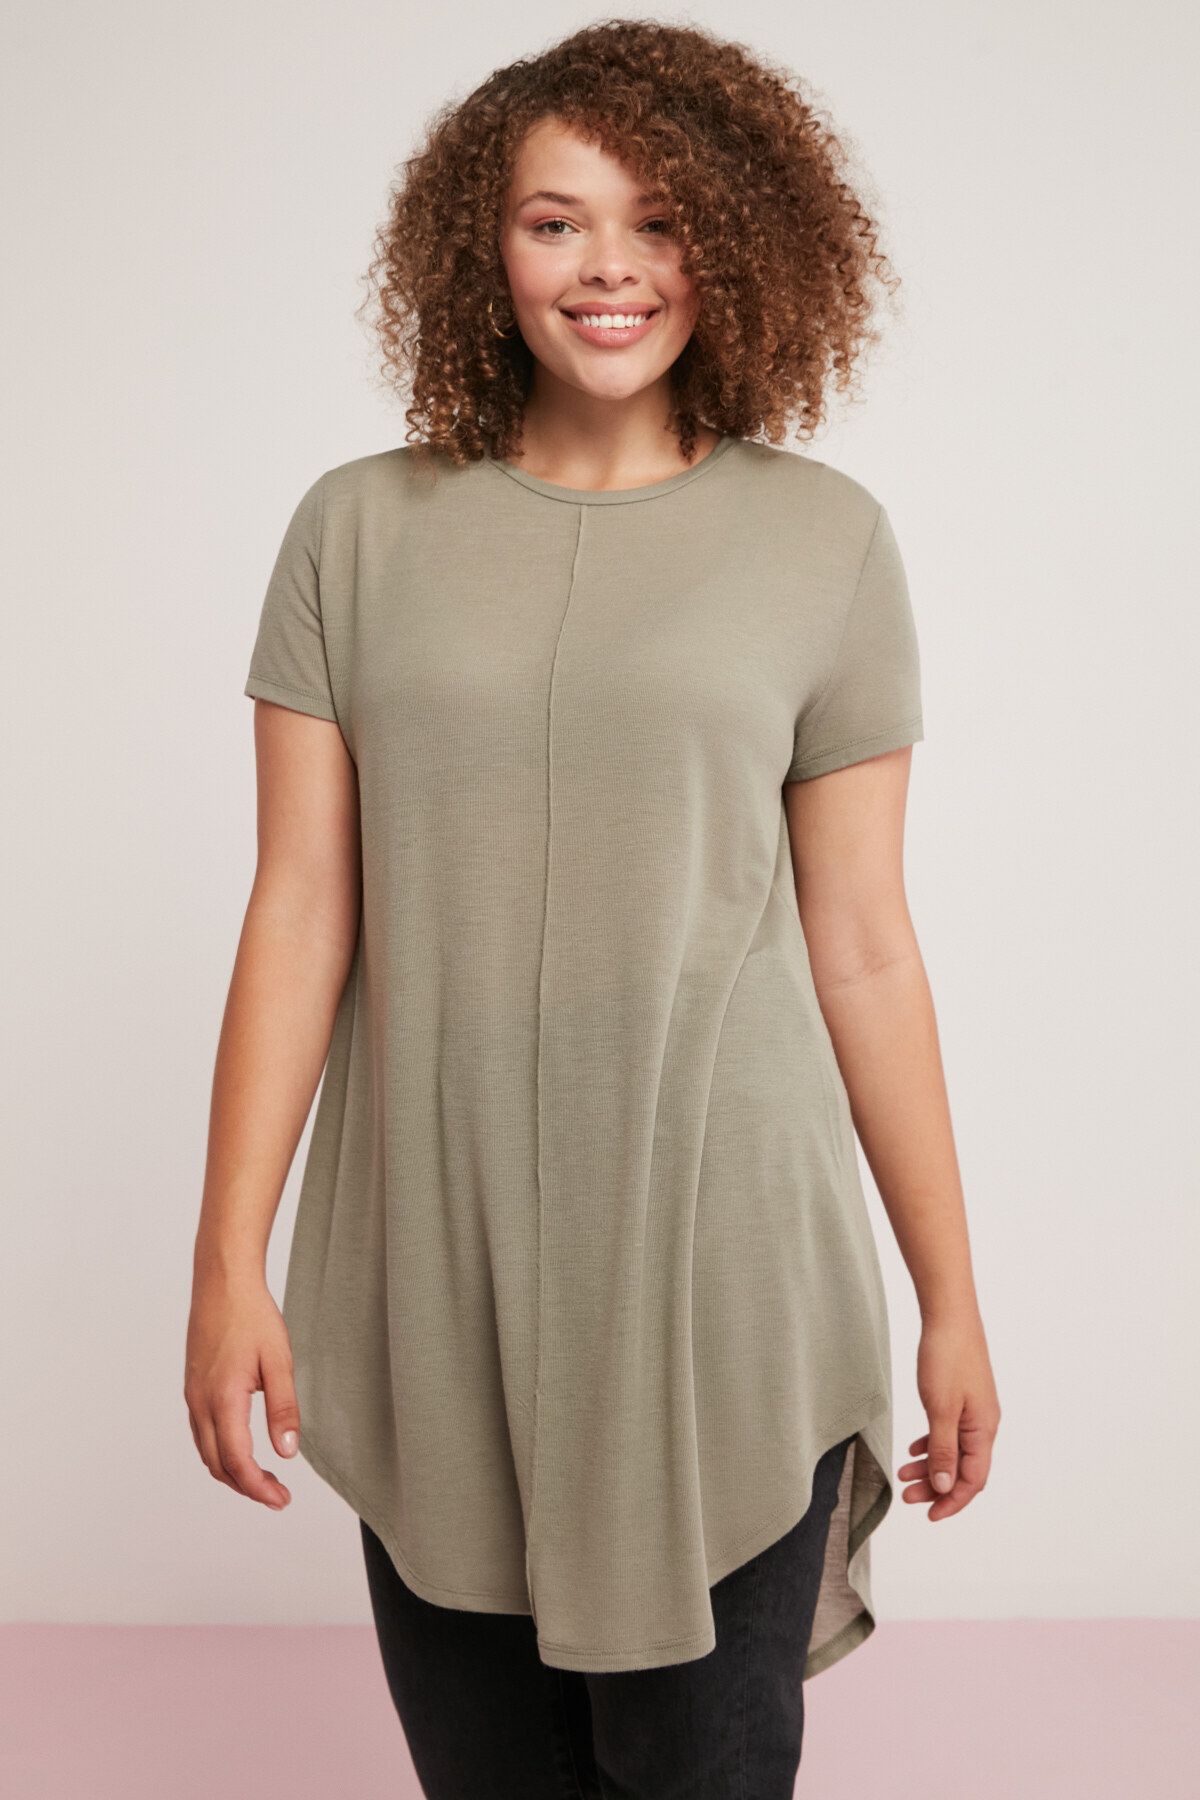 ETHIQUET Rachelle Kadın Asimetrik Kesim Viskon Karışımlı Dökümlü Haki Büyük Beden T-shirt